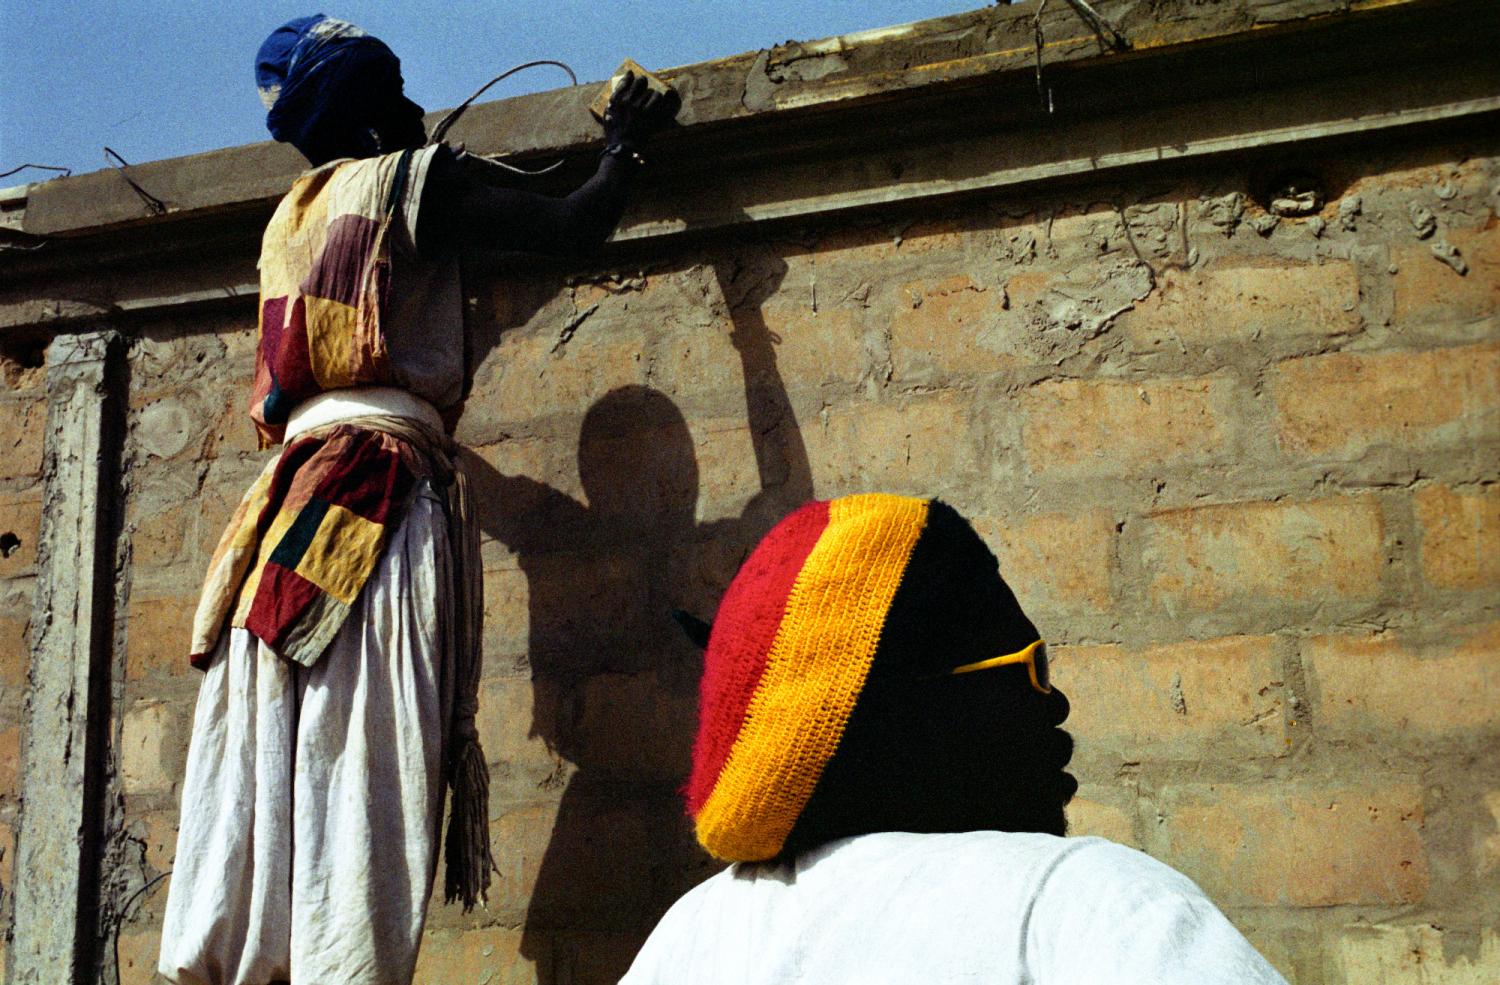 Modou prend une pause pendant que derrière lui Yapsa lisse le haut d'un mur. Touba, Sénégal, février 2008.